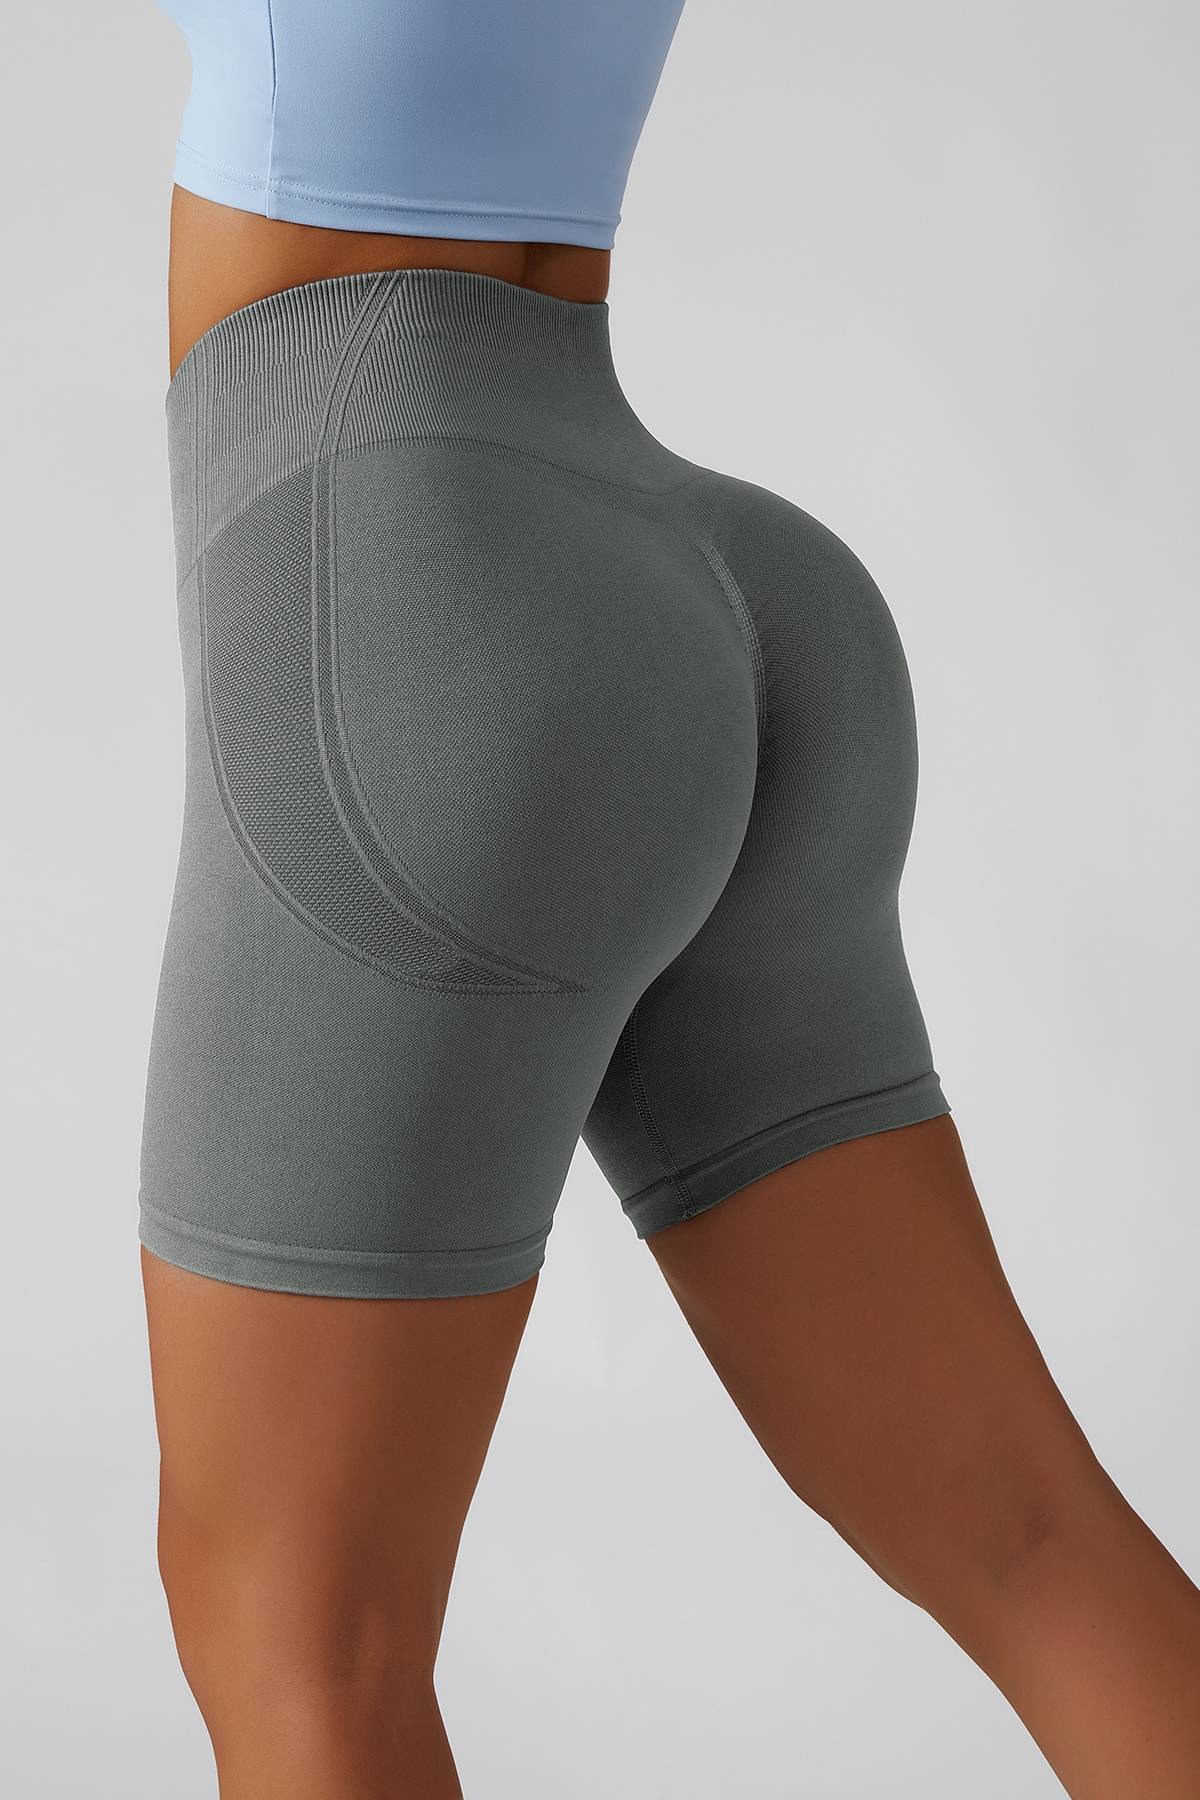 https://zioccie.com/cdn/shop/products/high-rise-scrunch-seamless-shorts-peach-lift-legging-shorts_10.jpg?v=1660406202